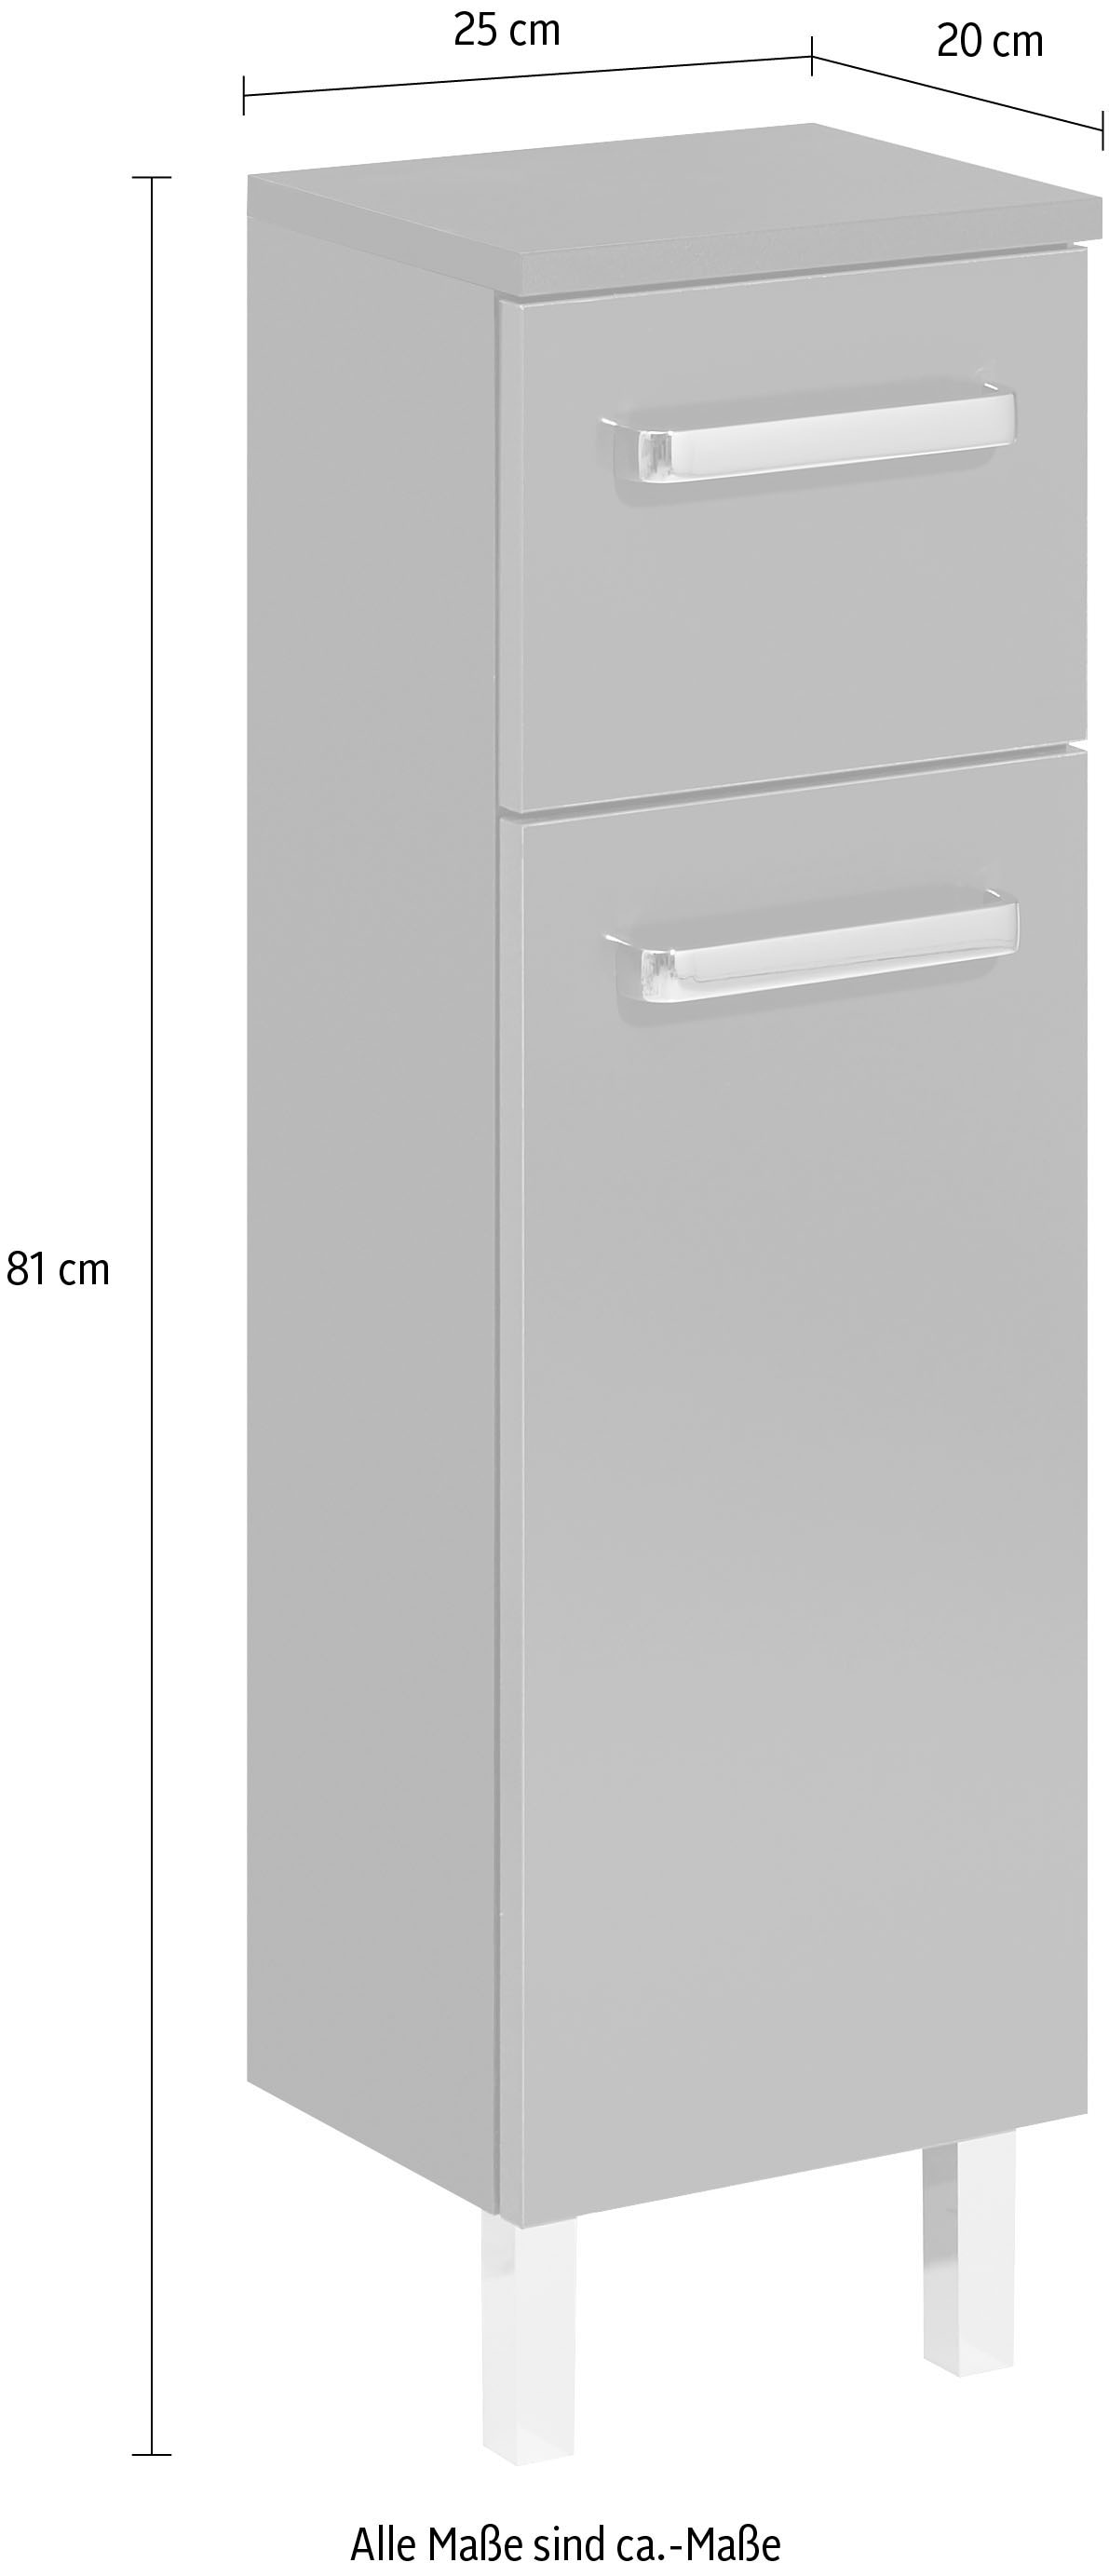 Saphir Unterschrank »Quickset Badschrank mit 1 Tür, 1 Schublade, 25 cm breit«, Badezimmer-Unterschrank inkl. Türdämpfer, Griffe in Chrom Glanz